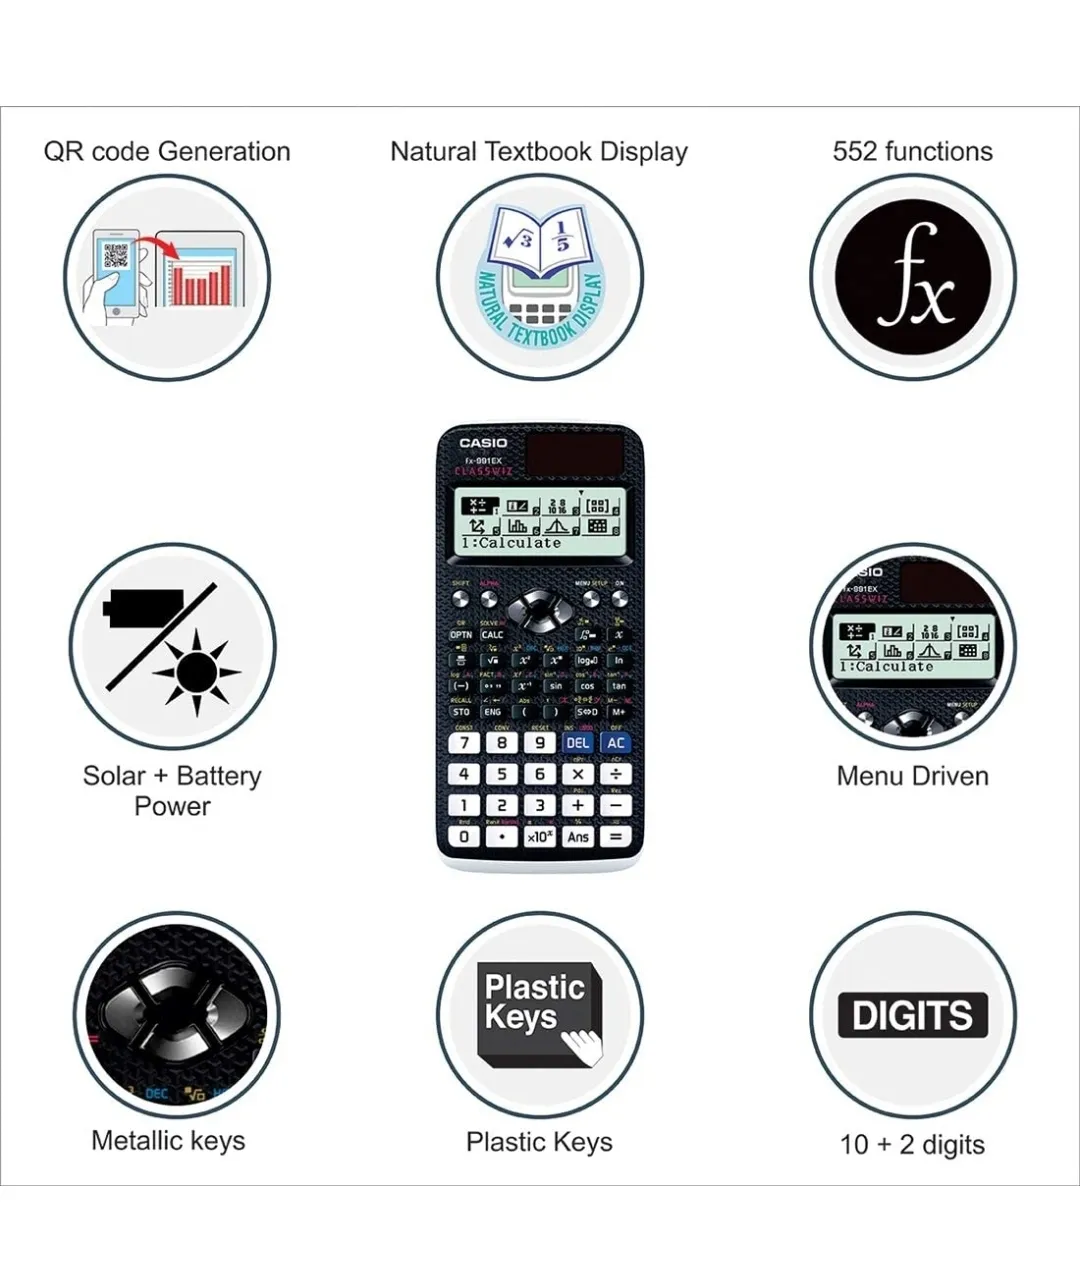 Casio Classwiz FX-991EX / 991MS Scientific Calculator